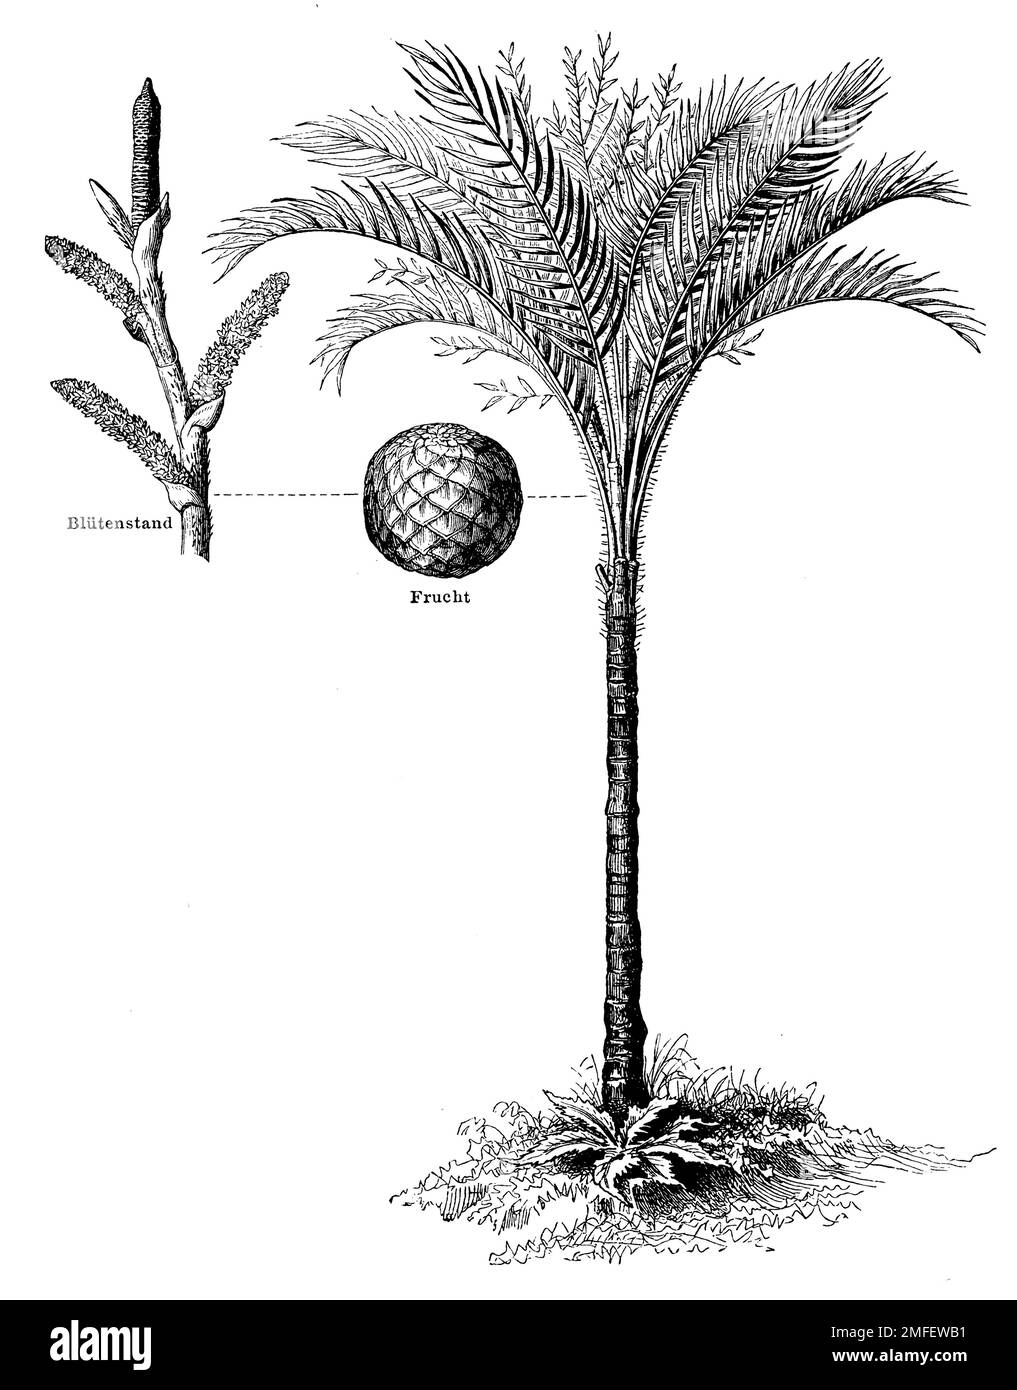 Palmier de sagou, Metrocon sagu, (encyclopédie, 1888), Sagopalme, sagoutier Banque D'Images